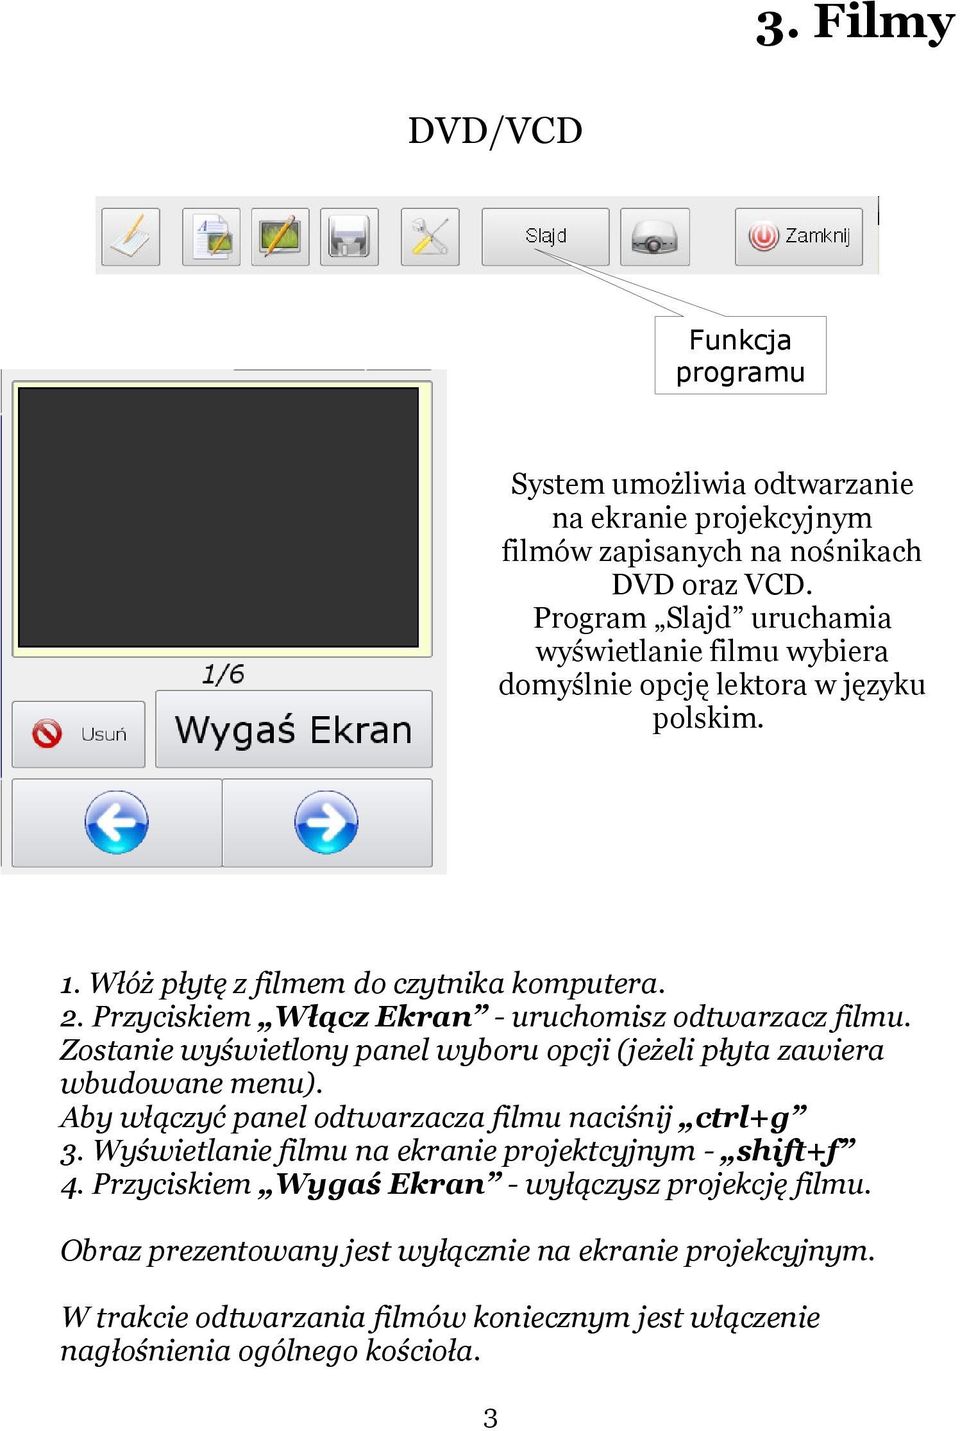 Przyciskiem Włącz Ekran - uruchomisz odtwarzacz filmu. Zostanie wyświetlony panel wyboru opcji (jeżeli płyta zawiera wbudowane menu).